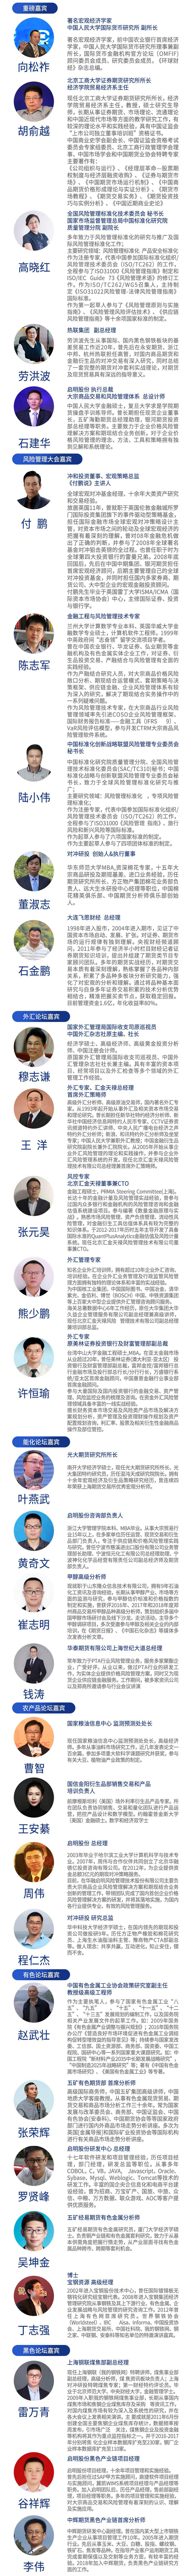 2019第五届中国市场风险管理大会（上海）